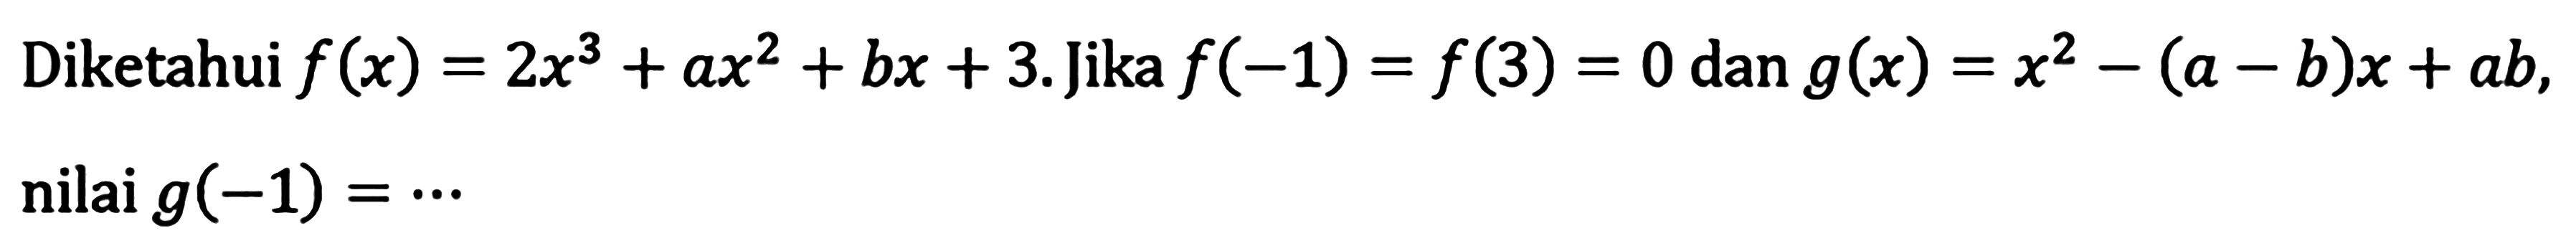 Diketahui f(x)=2x^3+ax^2+bx+3. Jika f(-1)=f(3)=0 dan g(x)=x^2-(a-b)x+ab, nilai g(-1)= .....